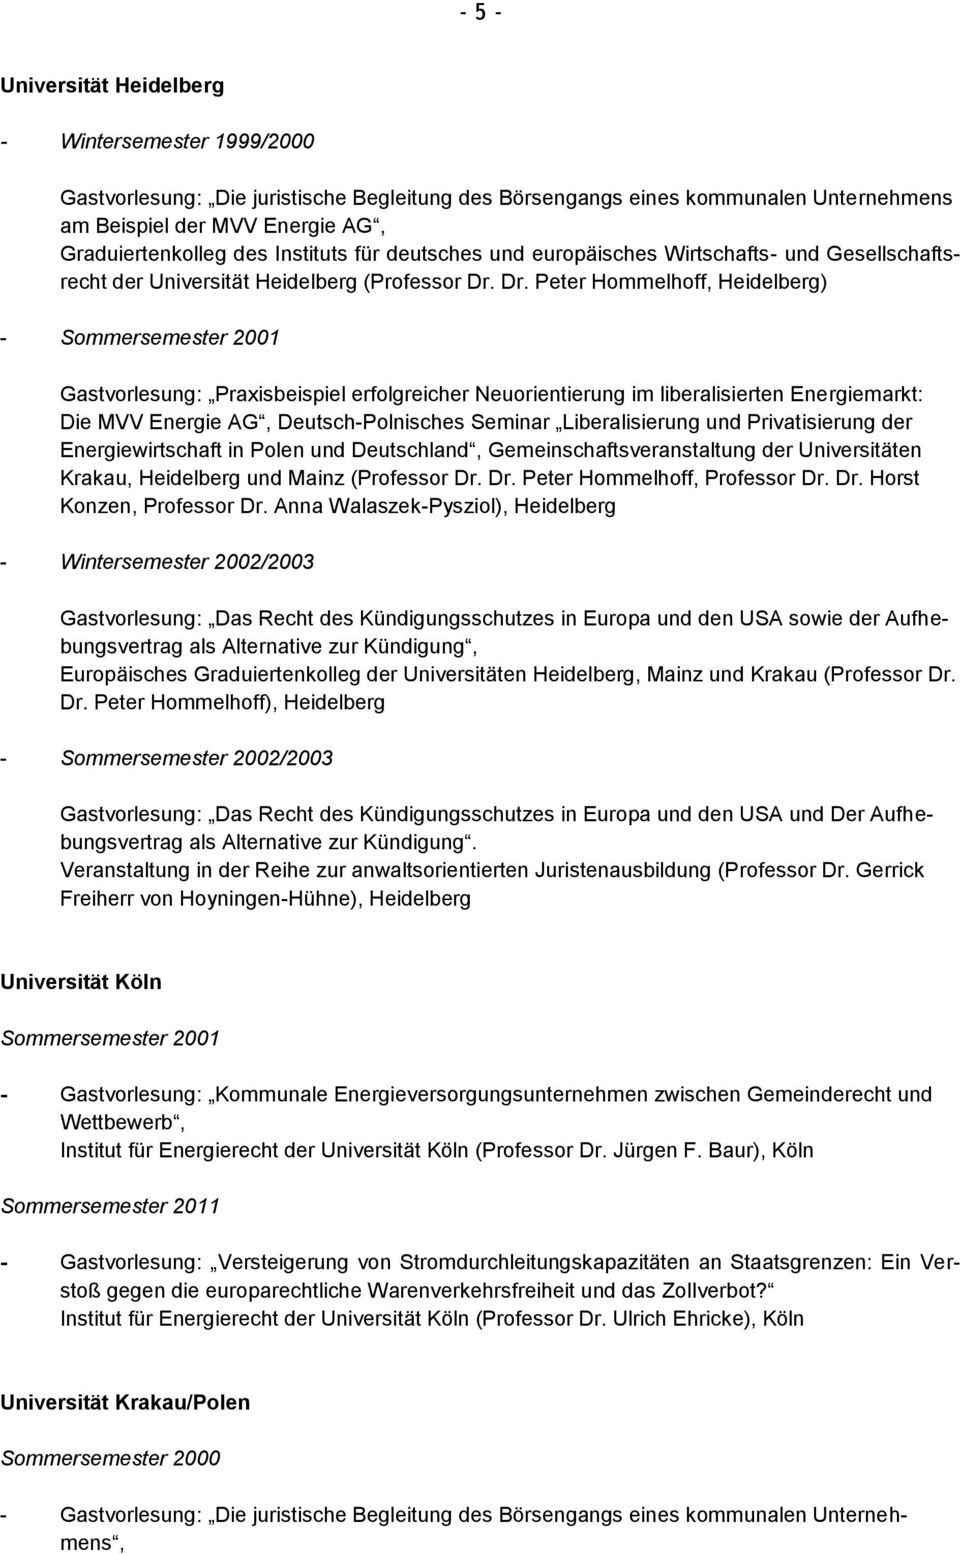 Dr. Peter Hommelhoff, Heidelberg) - Sommersemester 2001 Gastvorlesung: Praxisbeispiel erfolgreicher Neuorientierung im liberalisierten Energiemarkt: Die MVV Energie AG, Deutsch-Polnisches Seminar